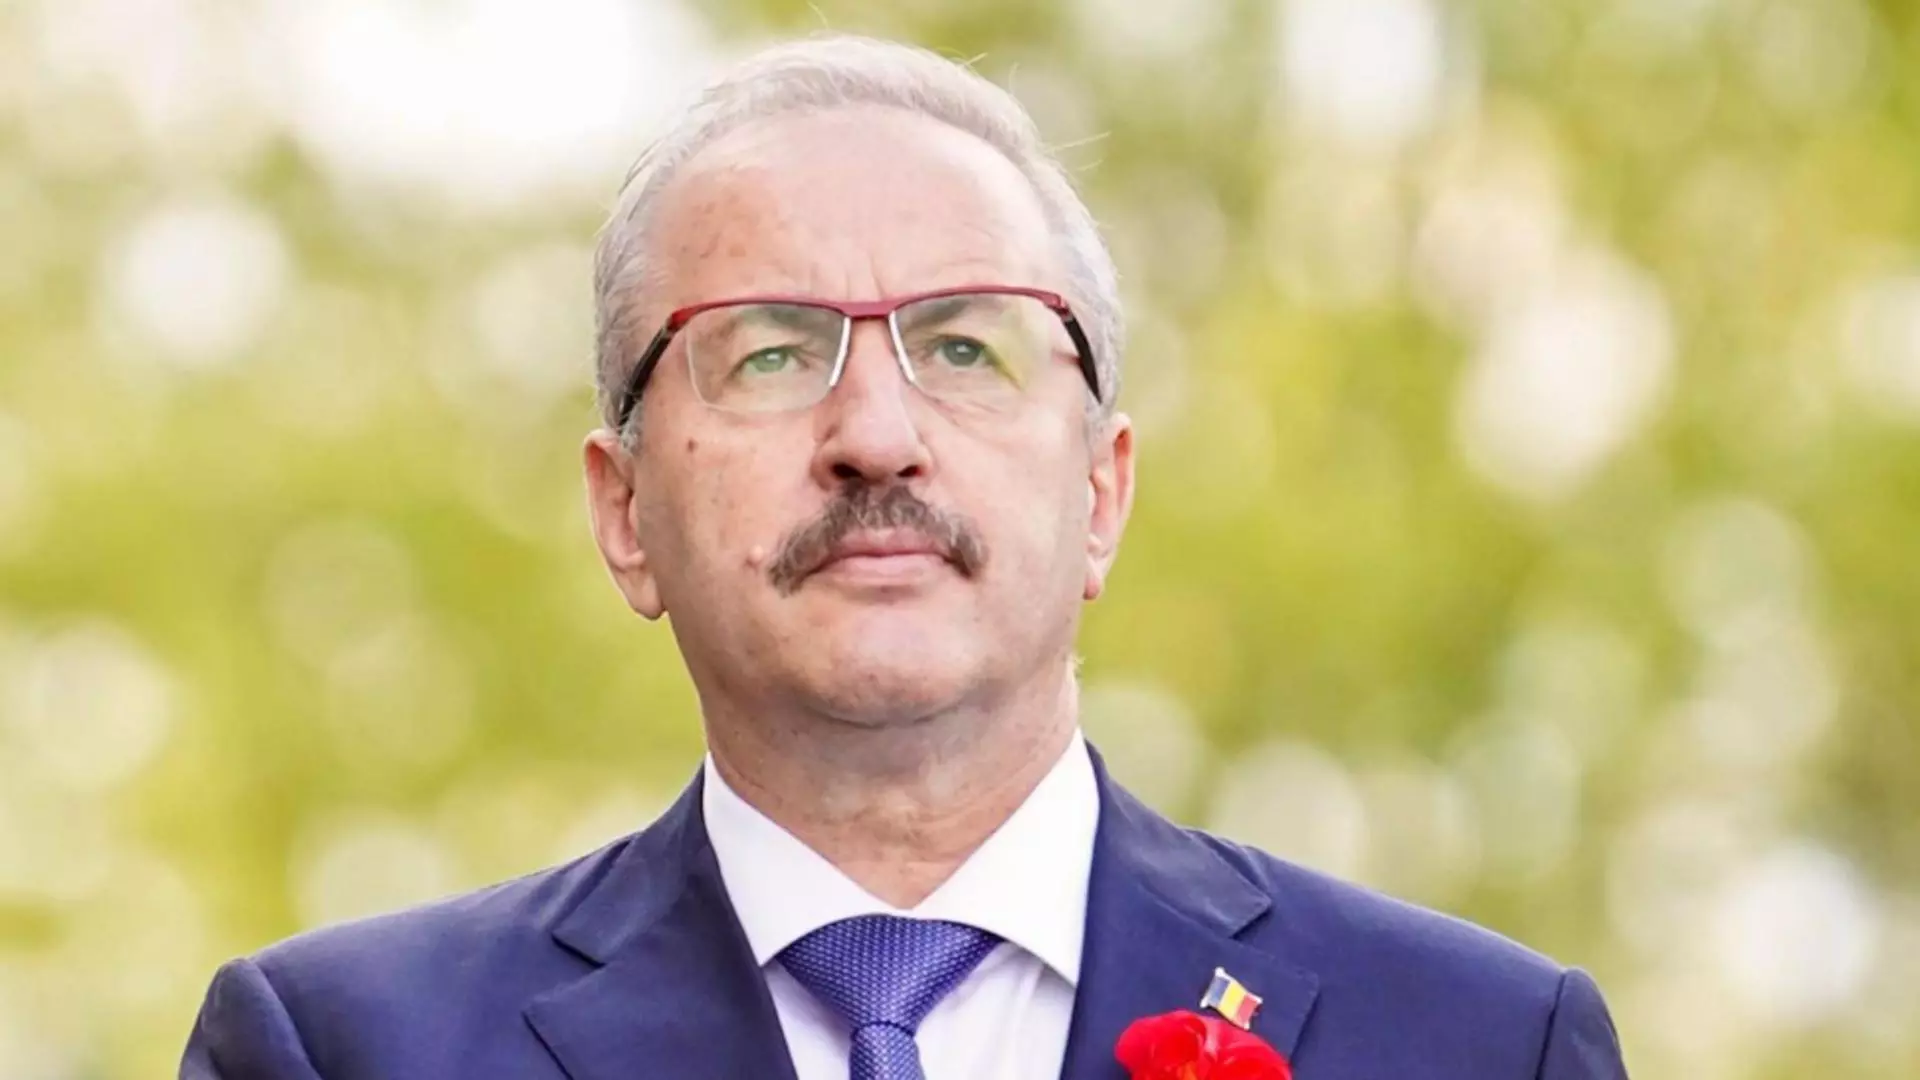 Vasile Dîncu a demisionat din funcția de ministru al Apărării după declarațiile controversate referitoare la Rusia